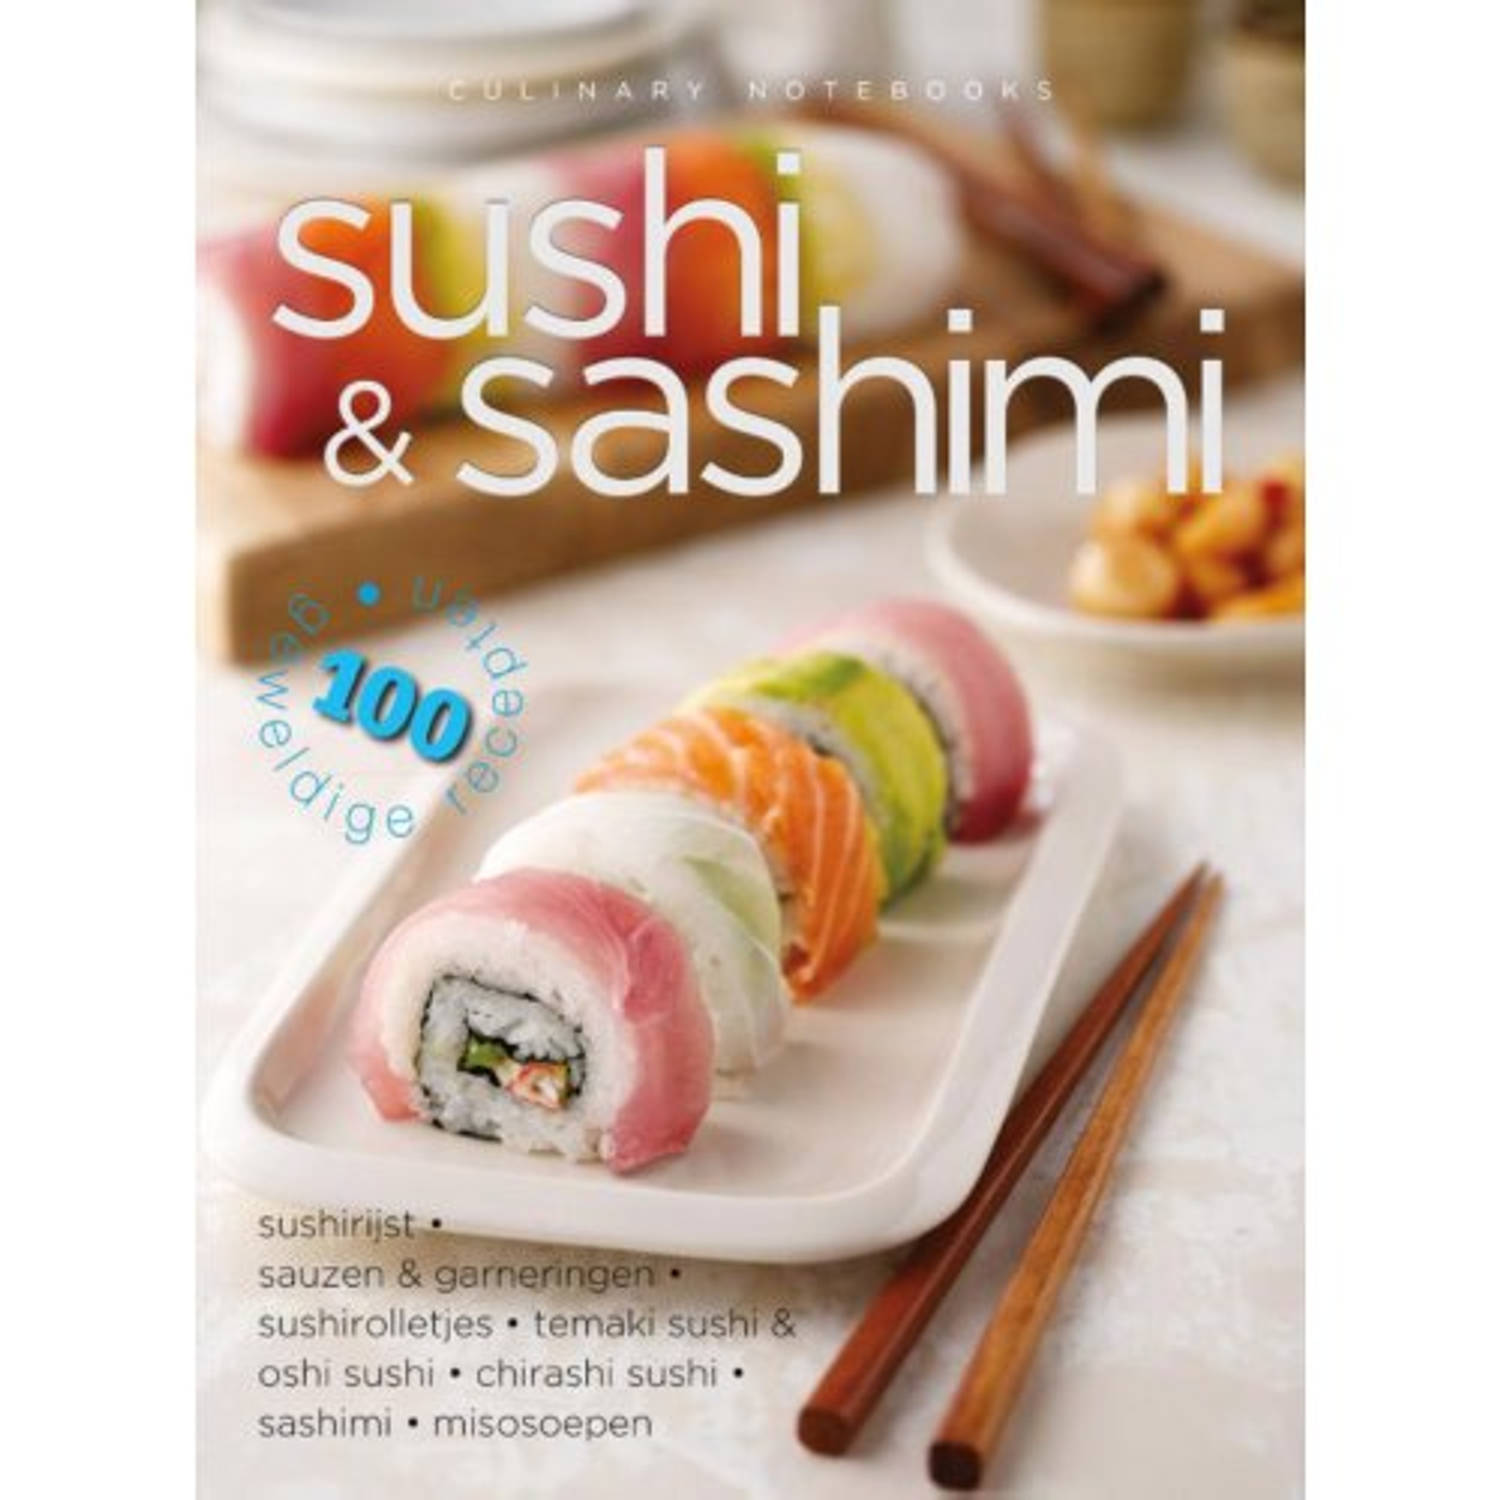 Culinary Notebooks Sushi & Sashimi